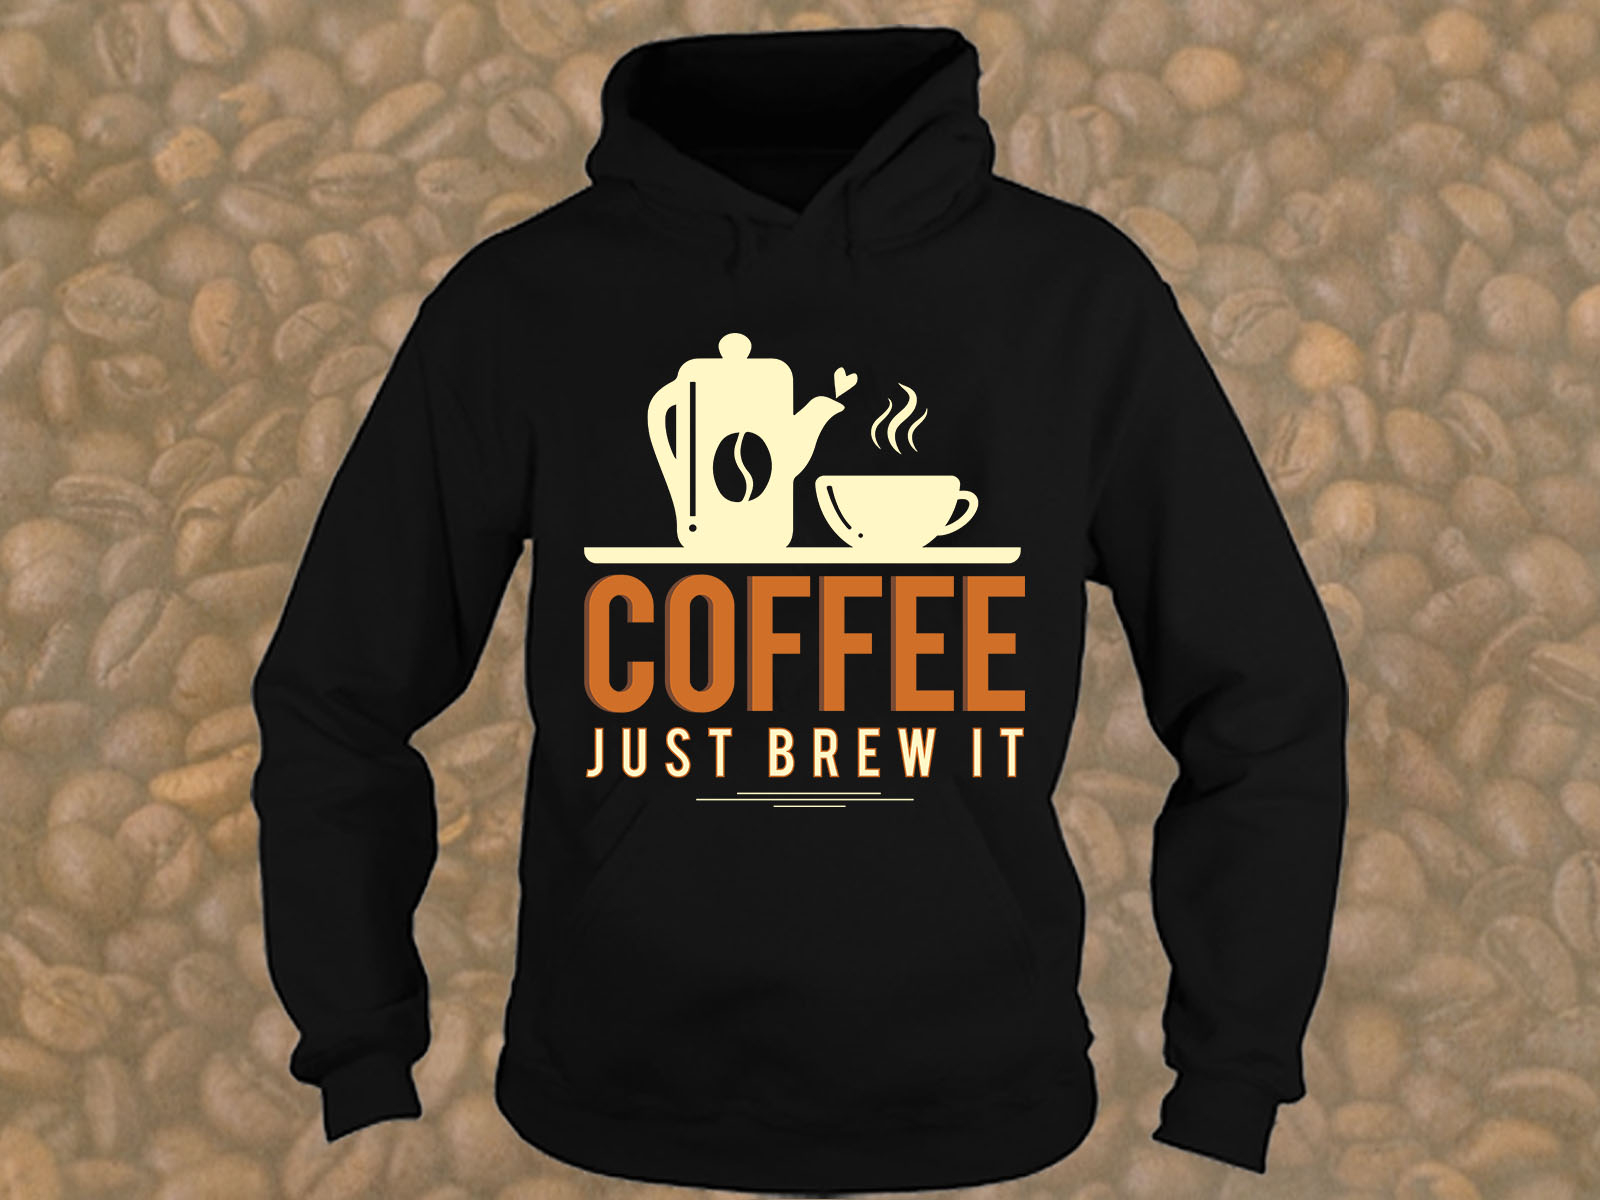 Just Brew It Coffee by Reshma Aktar Mitu on Dribbble